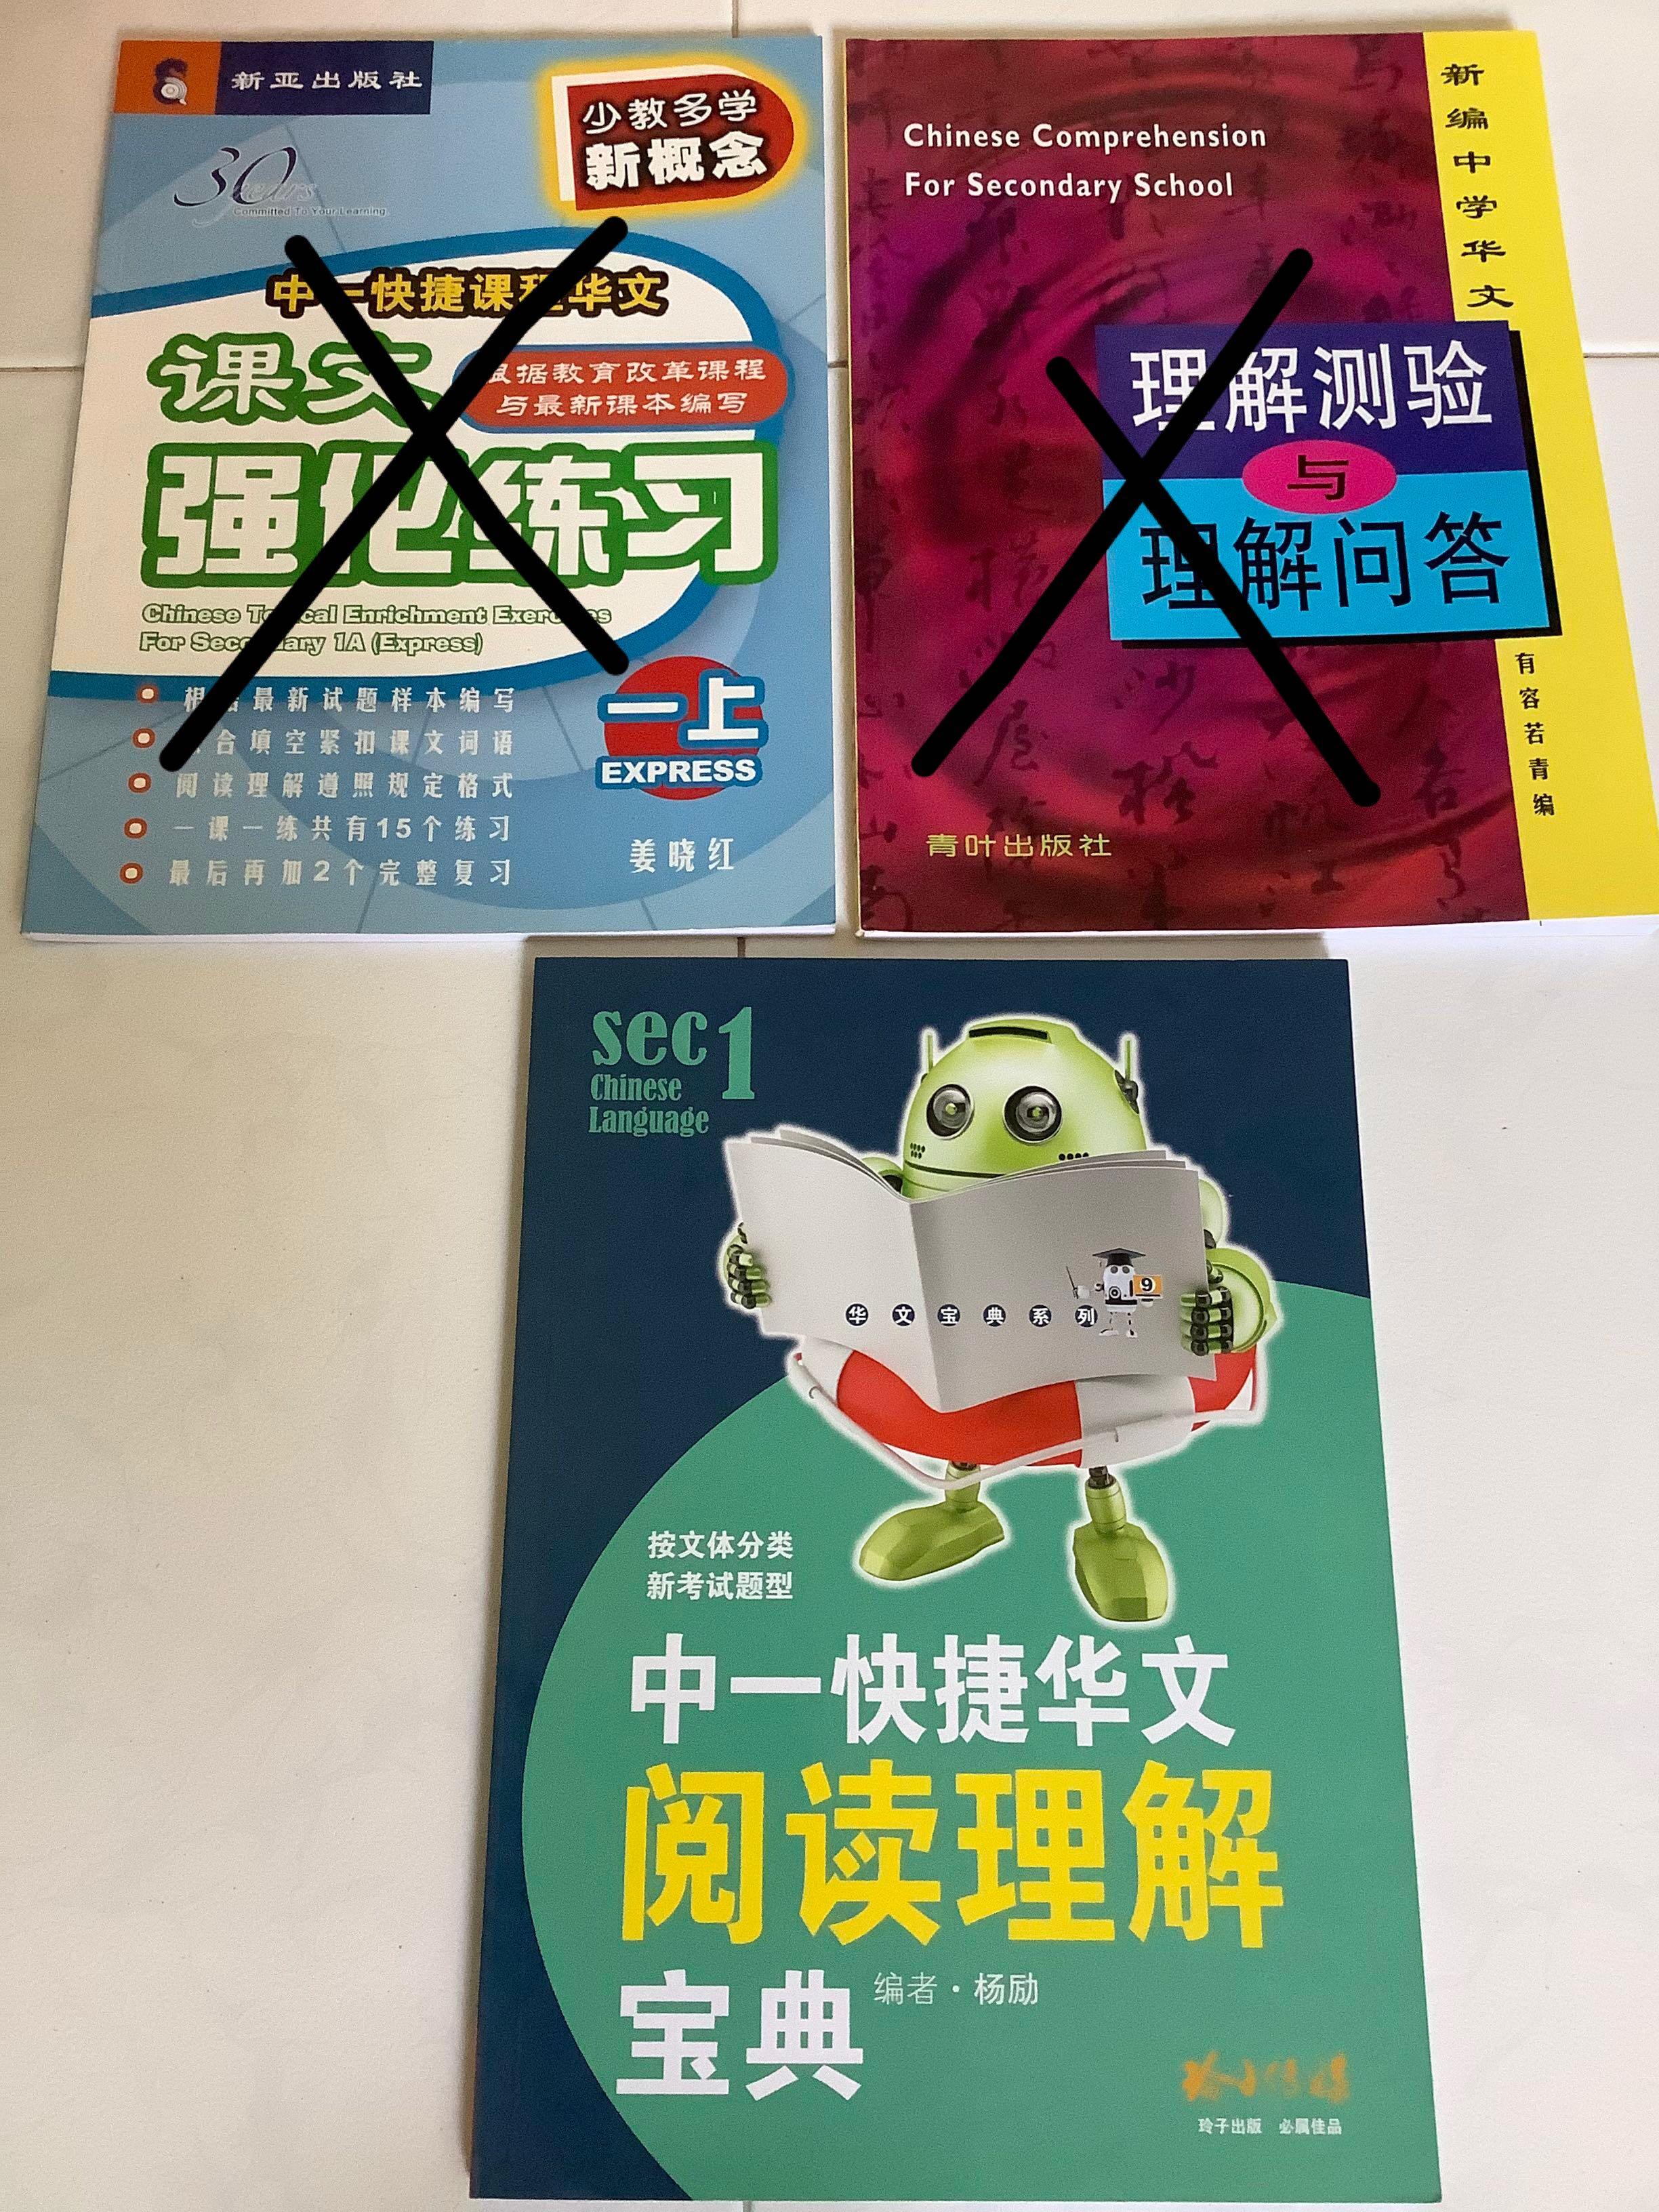 中一阅读理解理解问答快捷华文sec 1 Chinese Comprehension Hobbies Toys Books Magazines Assessment Books On Carousell